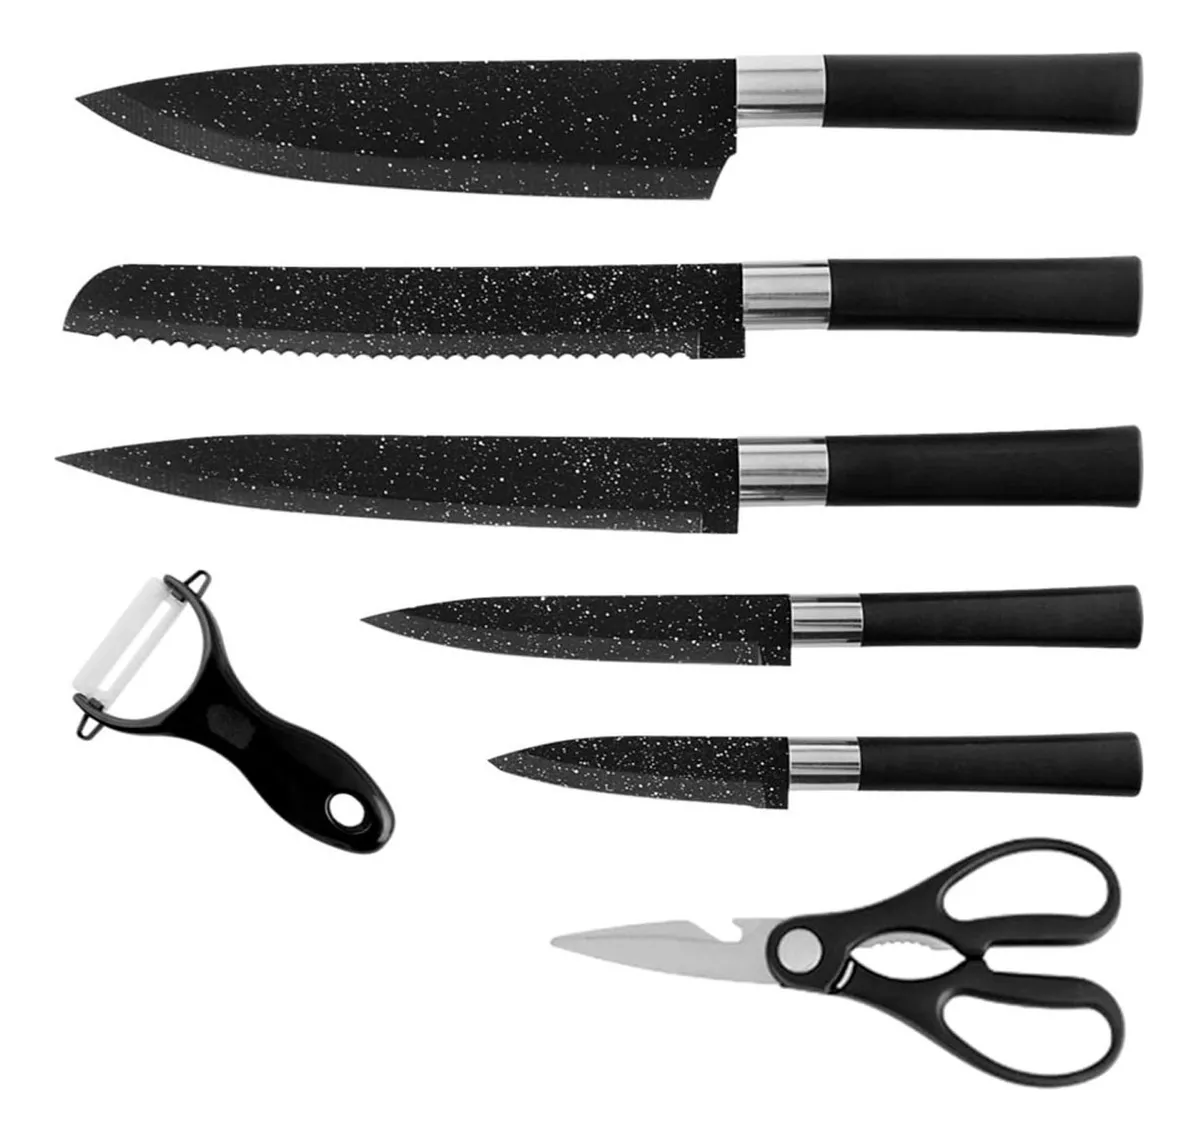 Segunda imagen para búsqueda de juego de cuchillos